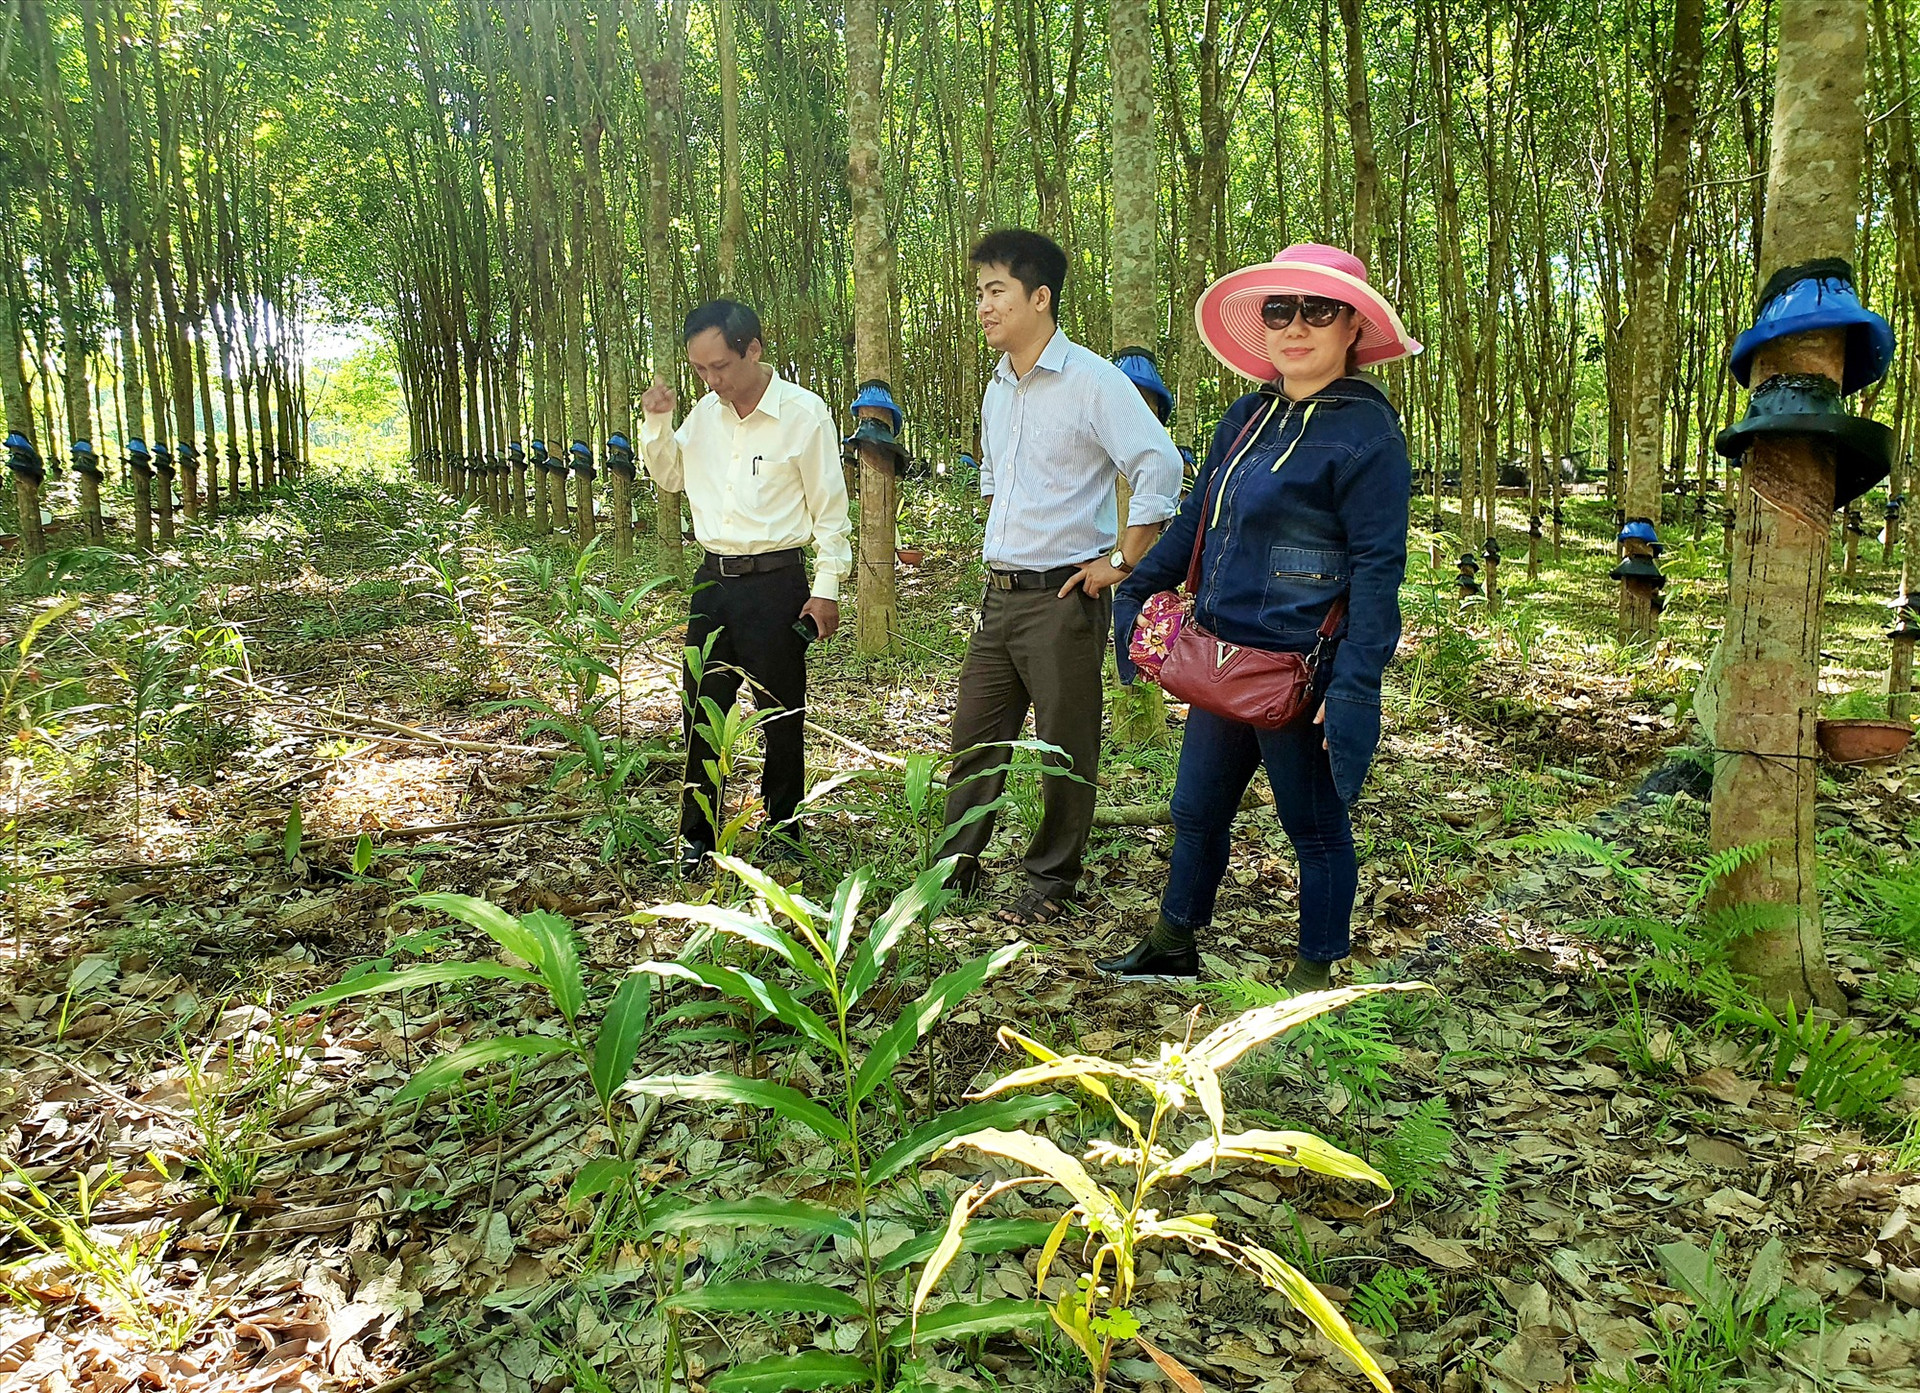 Những năm qua, người dân ở nhiều địa phương miền núi trong tỉnh đầu tư phát triển mạnh mô hình trồng cây sa nhân dưới tán rừng cao su. Ảnh: N.P